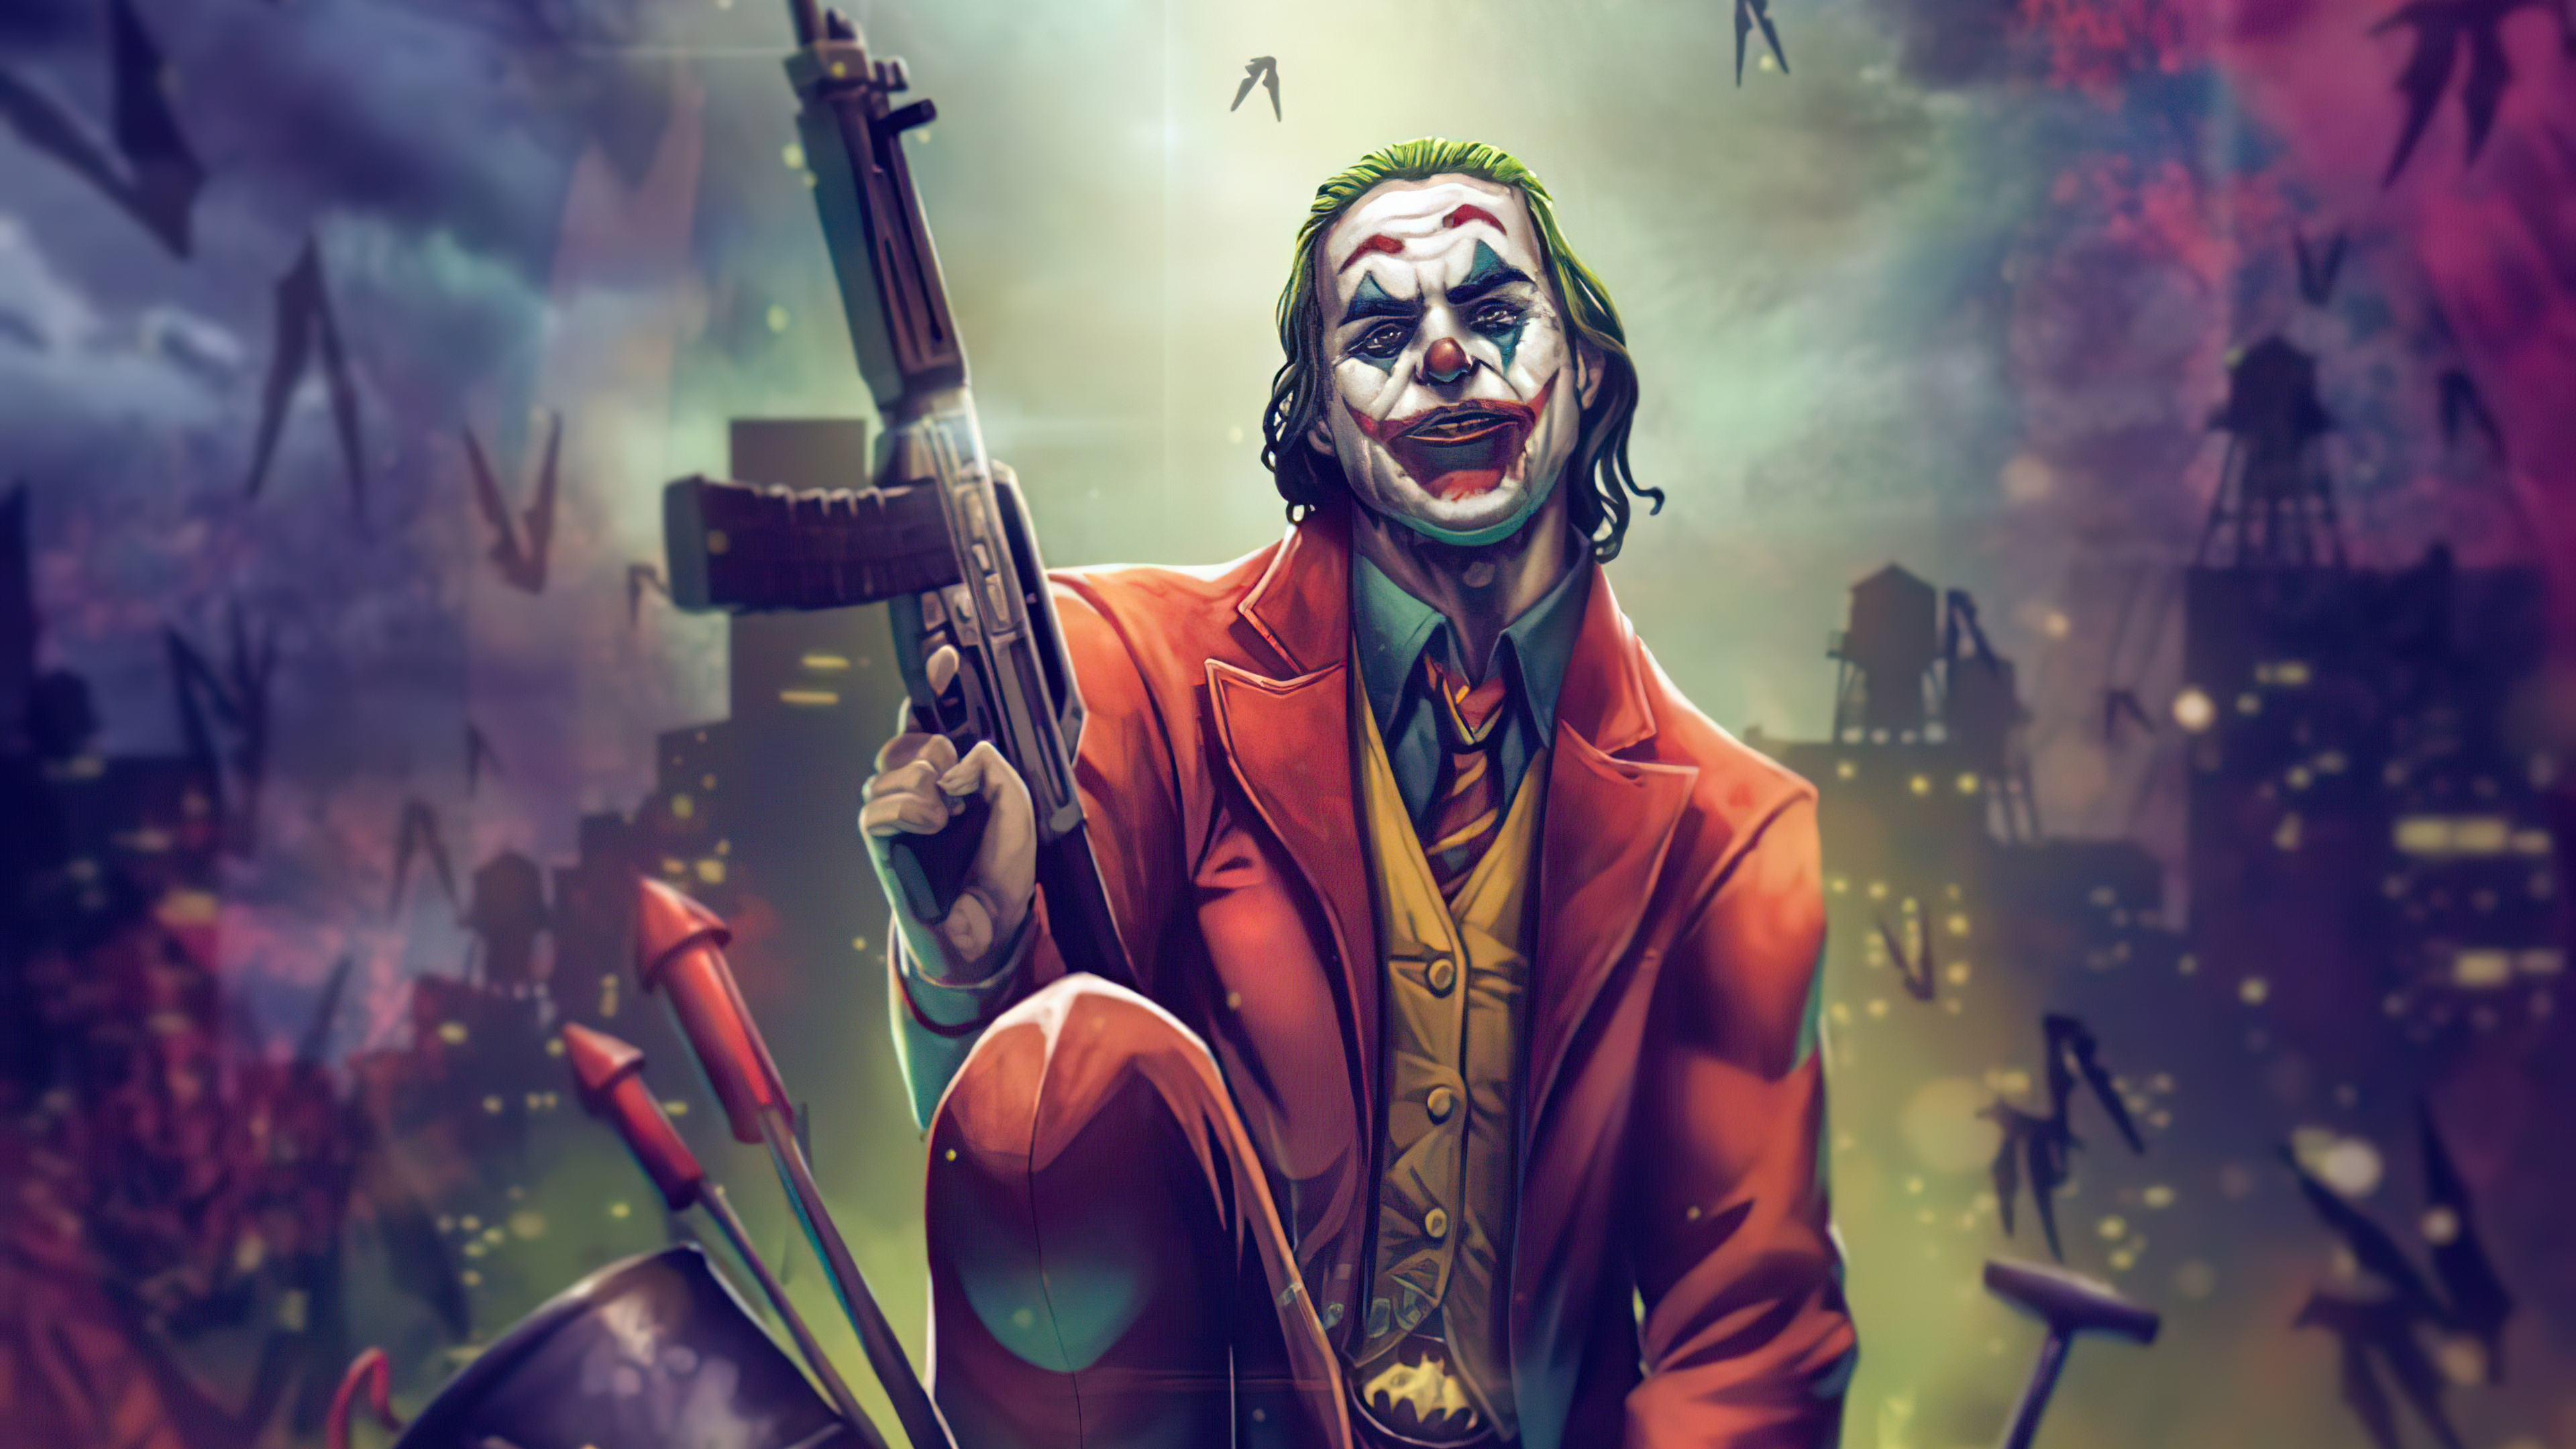 The Joker 4K Wallpapers